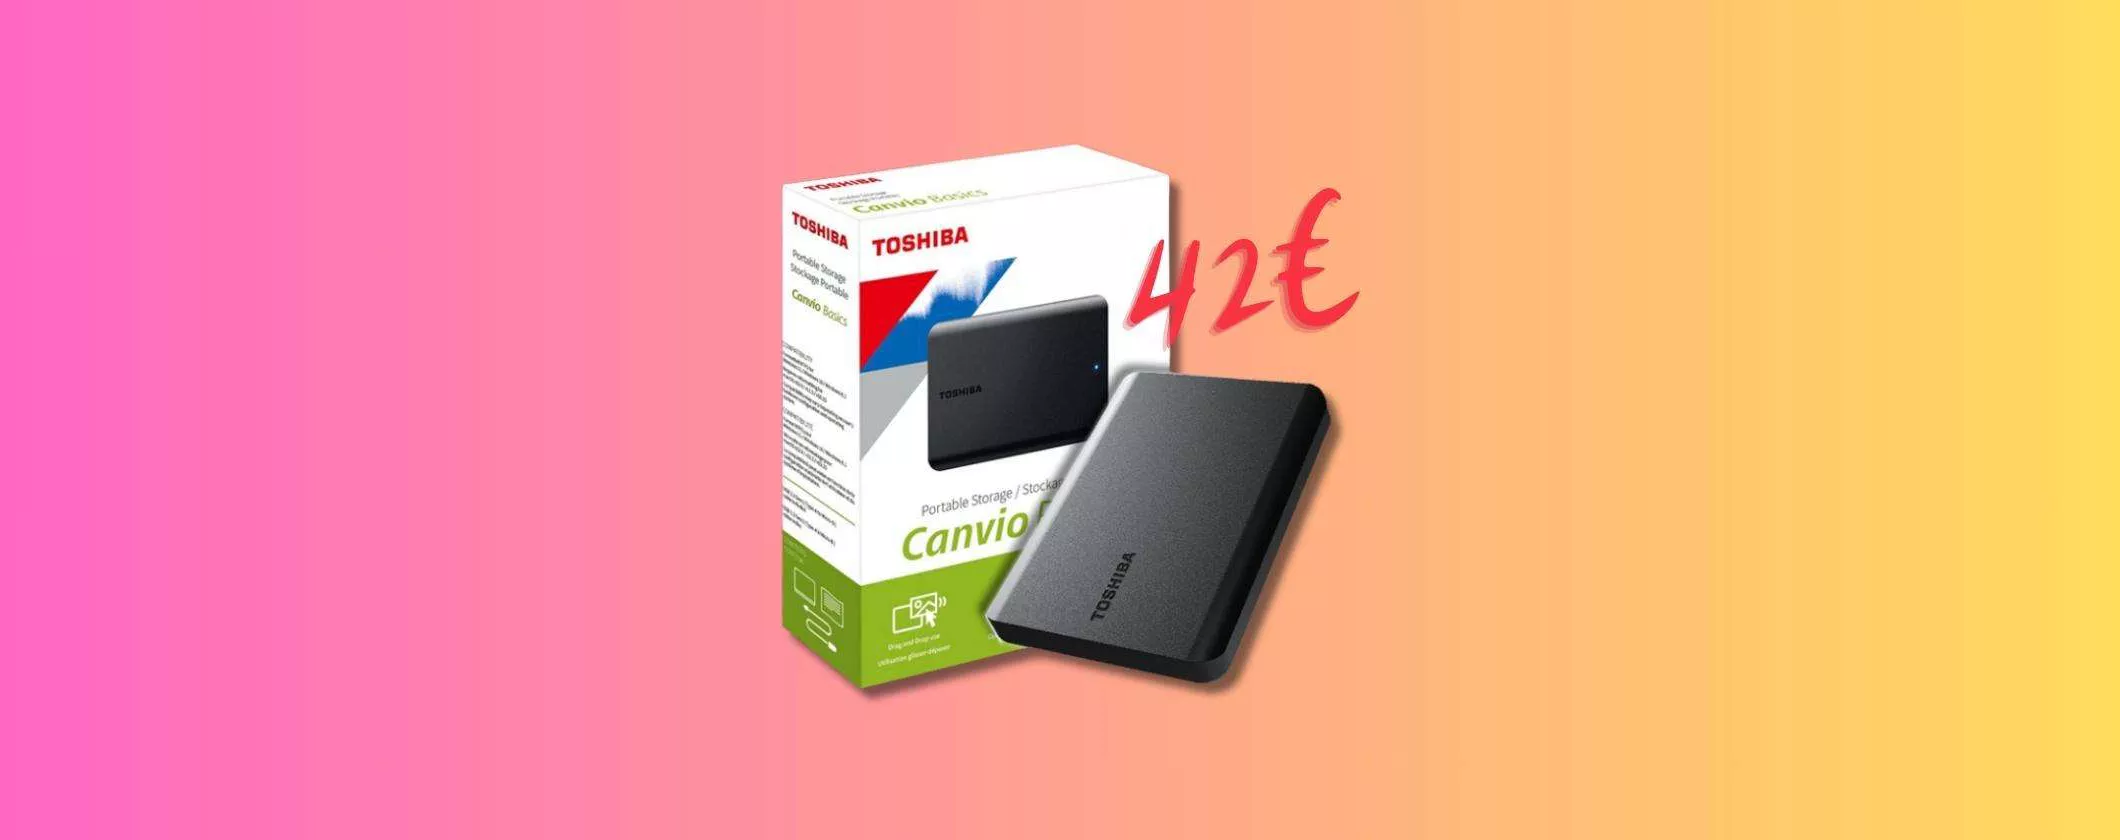 Hard Disk Esterno Toshiba Canvio Basics 1TB a soli 42€ su eBay